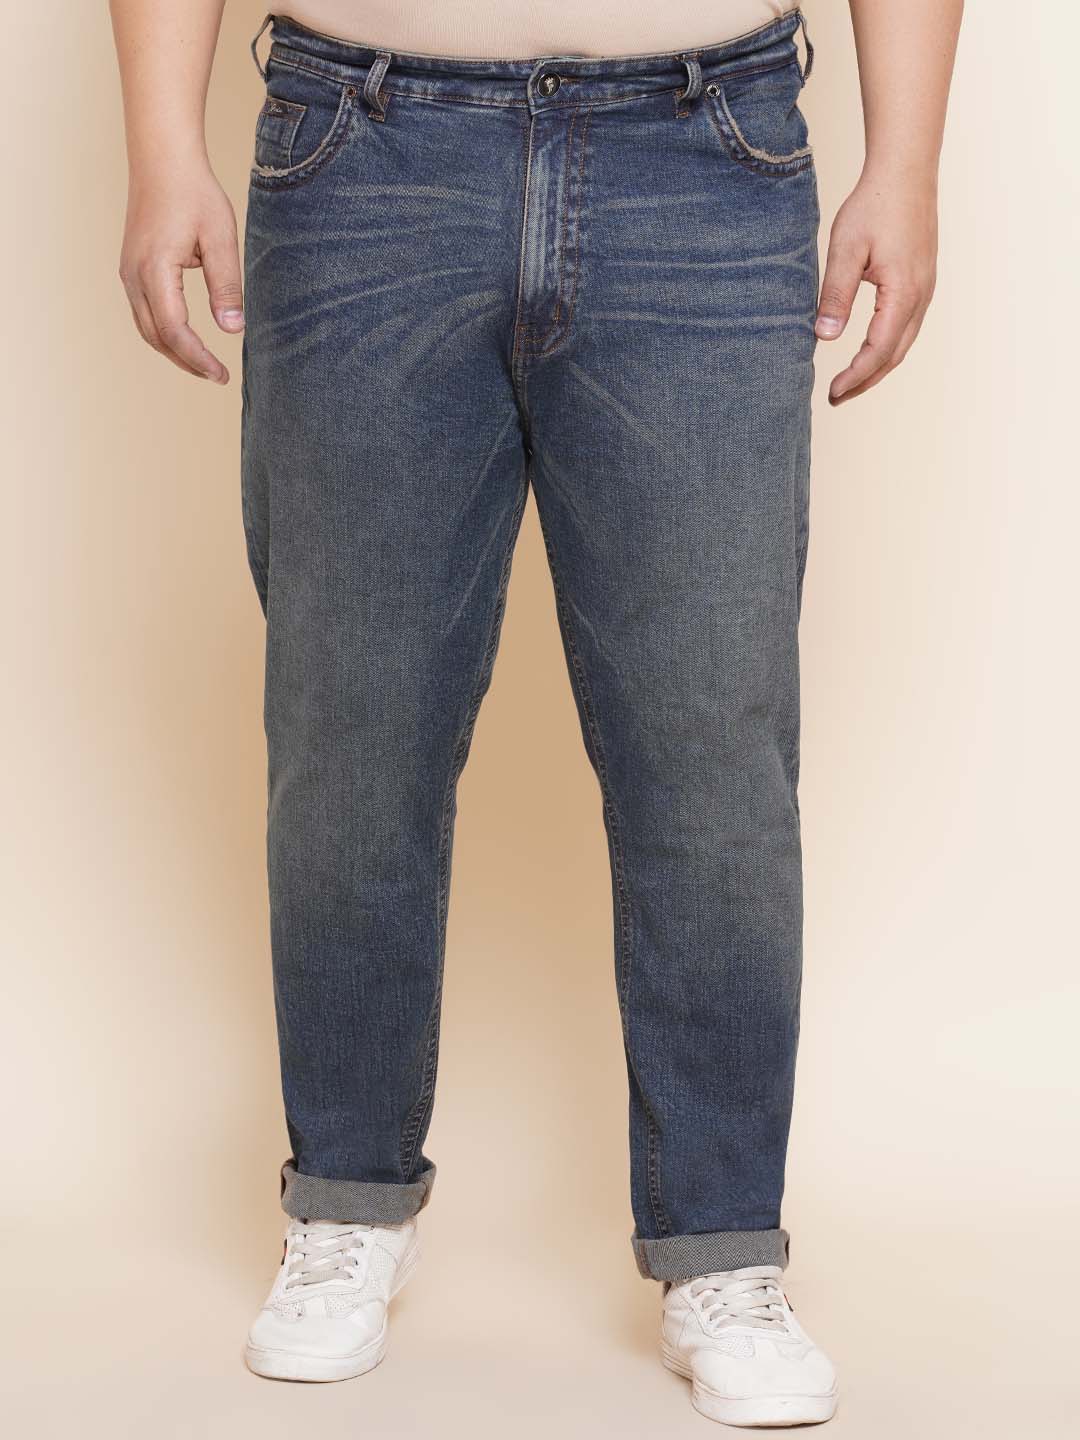 bottomwear/jeans/PJPJ6065/pjpj6065-1.jpg